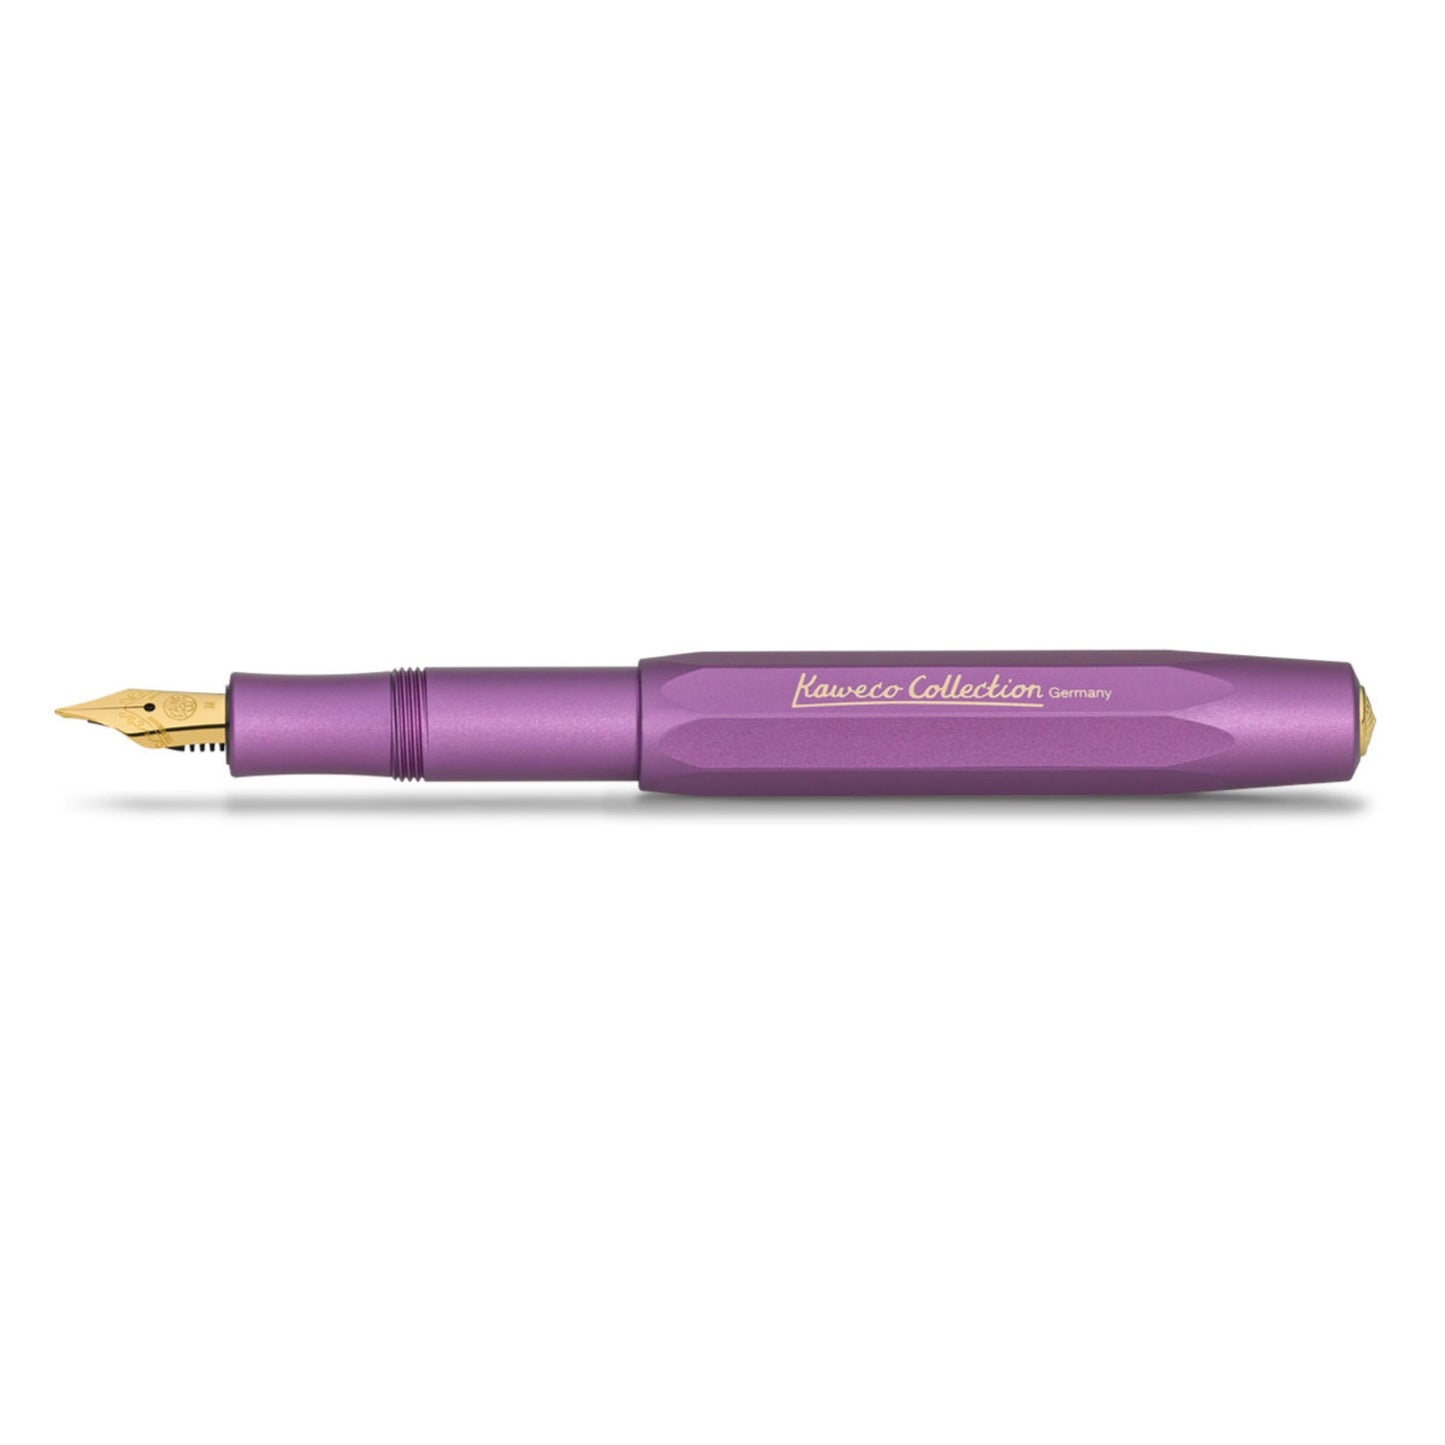 Aluminium Collection Fountain Pen - Vibrant Violet / Medium